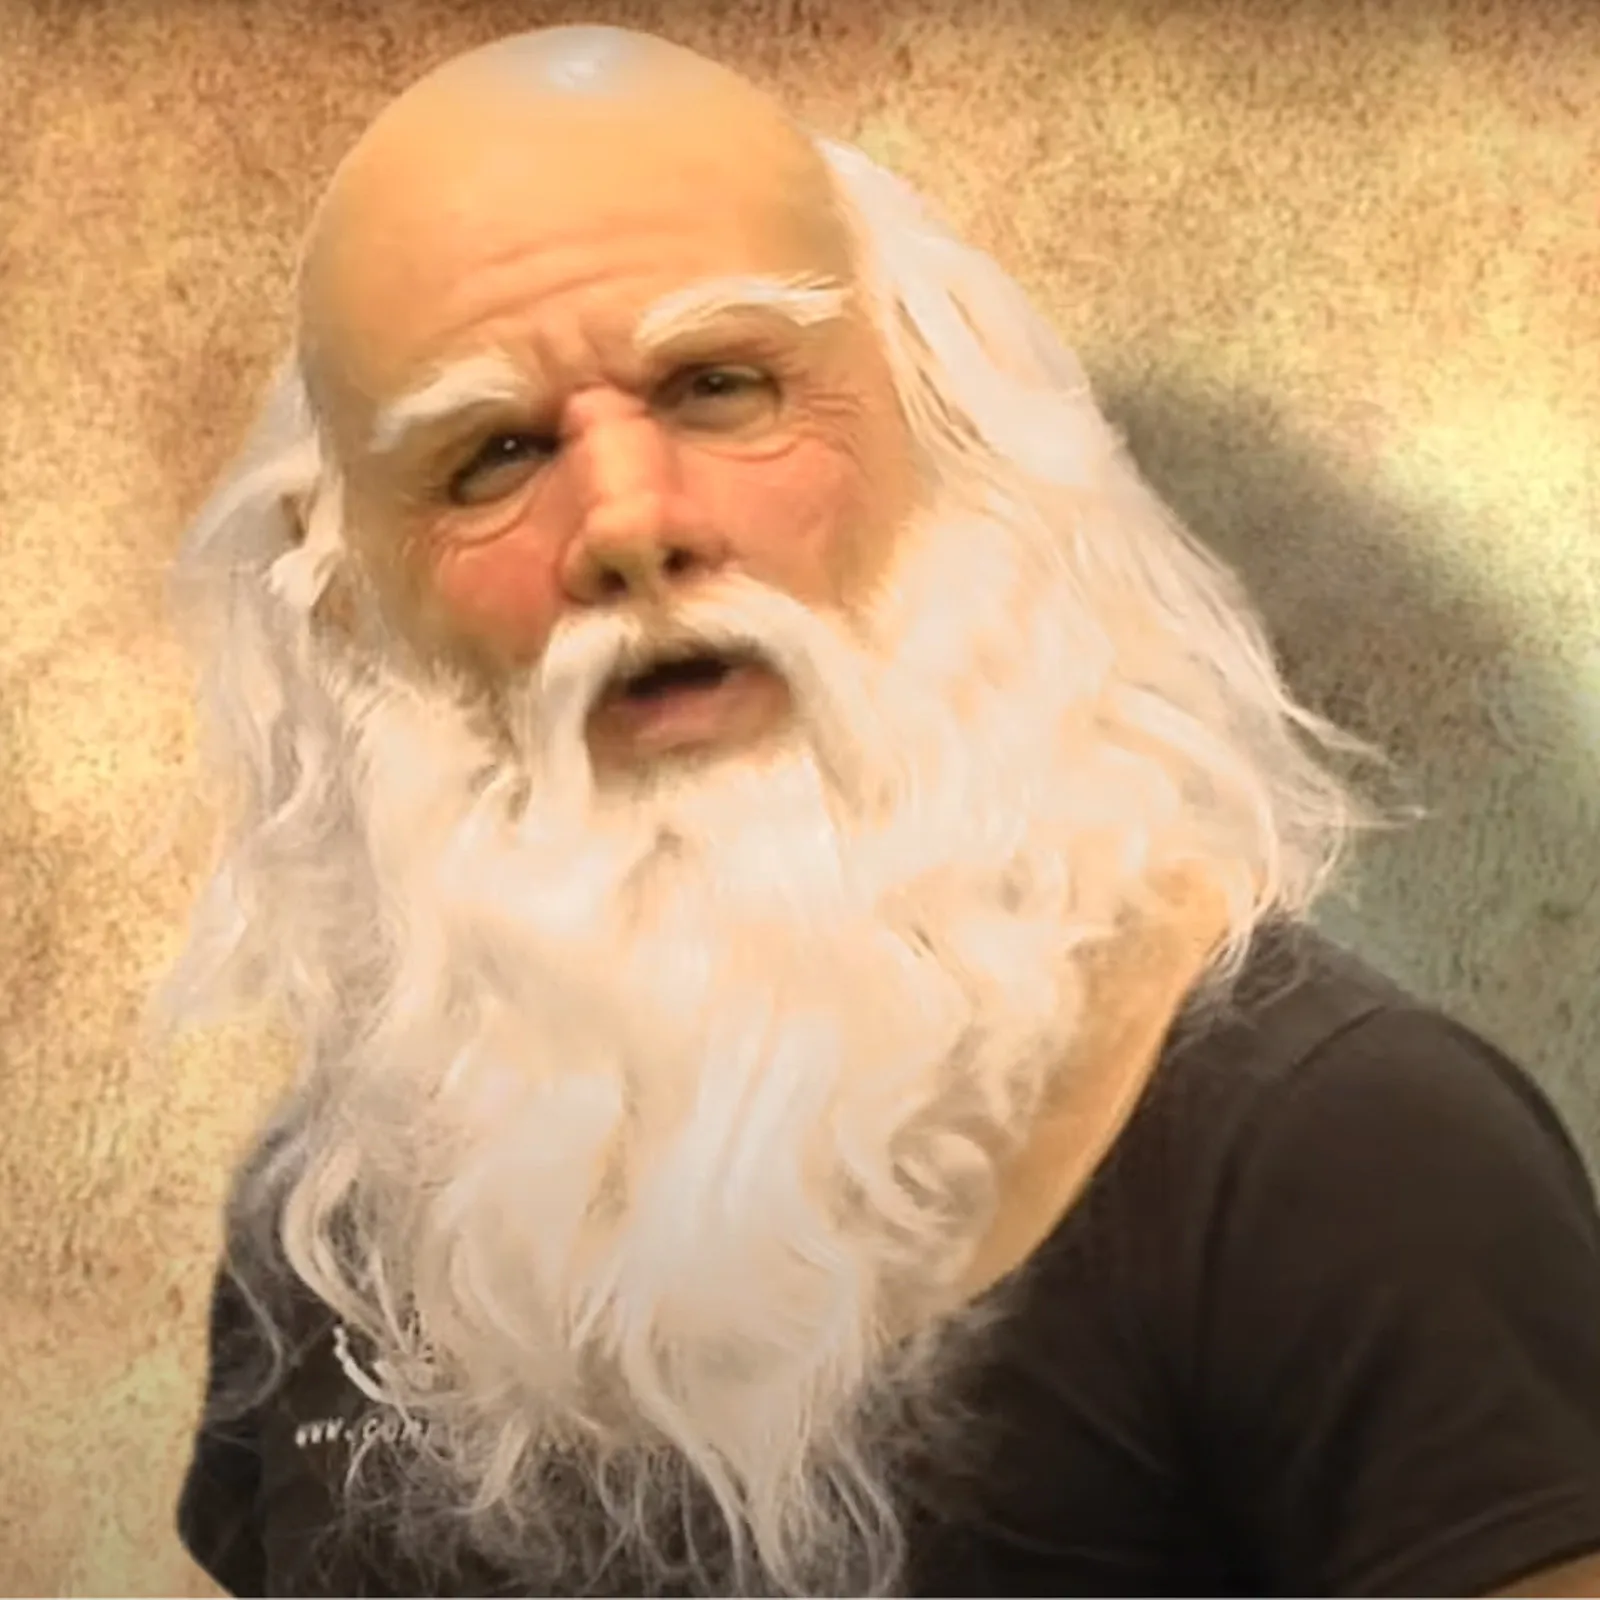 

Реалистичная маска для косплея Санта Клауса Смешные морщинки белая борода головные уборы для пожилых людей Хэллоуин Рождество маскарадное...